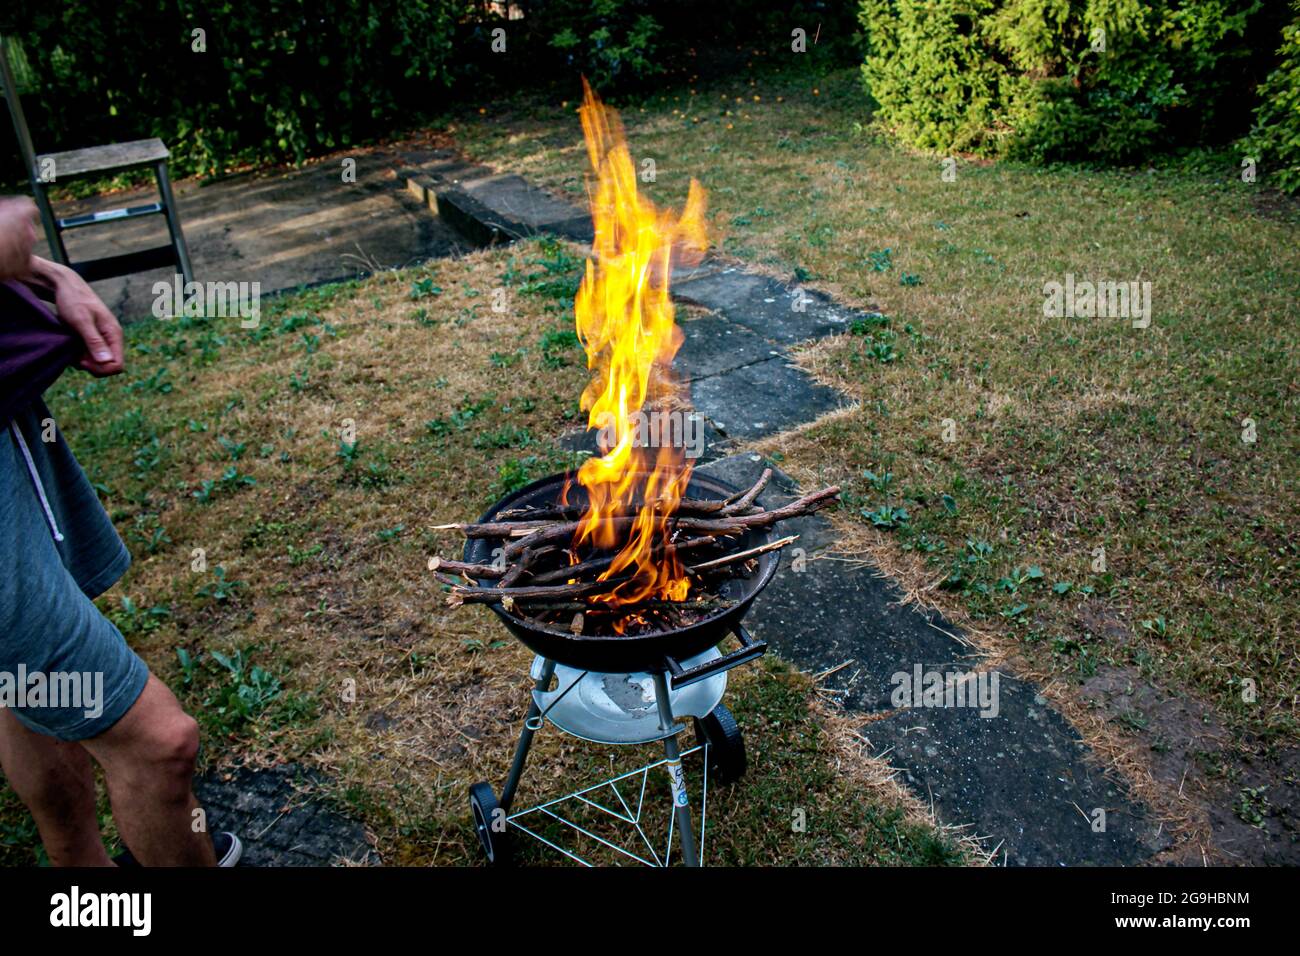 Encendedores de chimenea para barbacoa, restos de madera de fuego